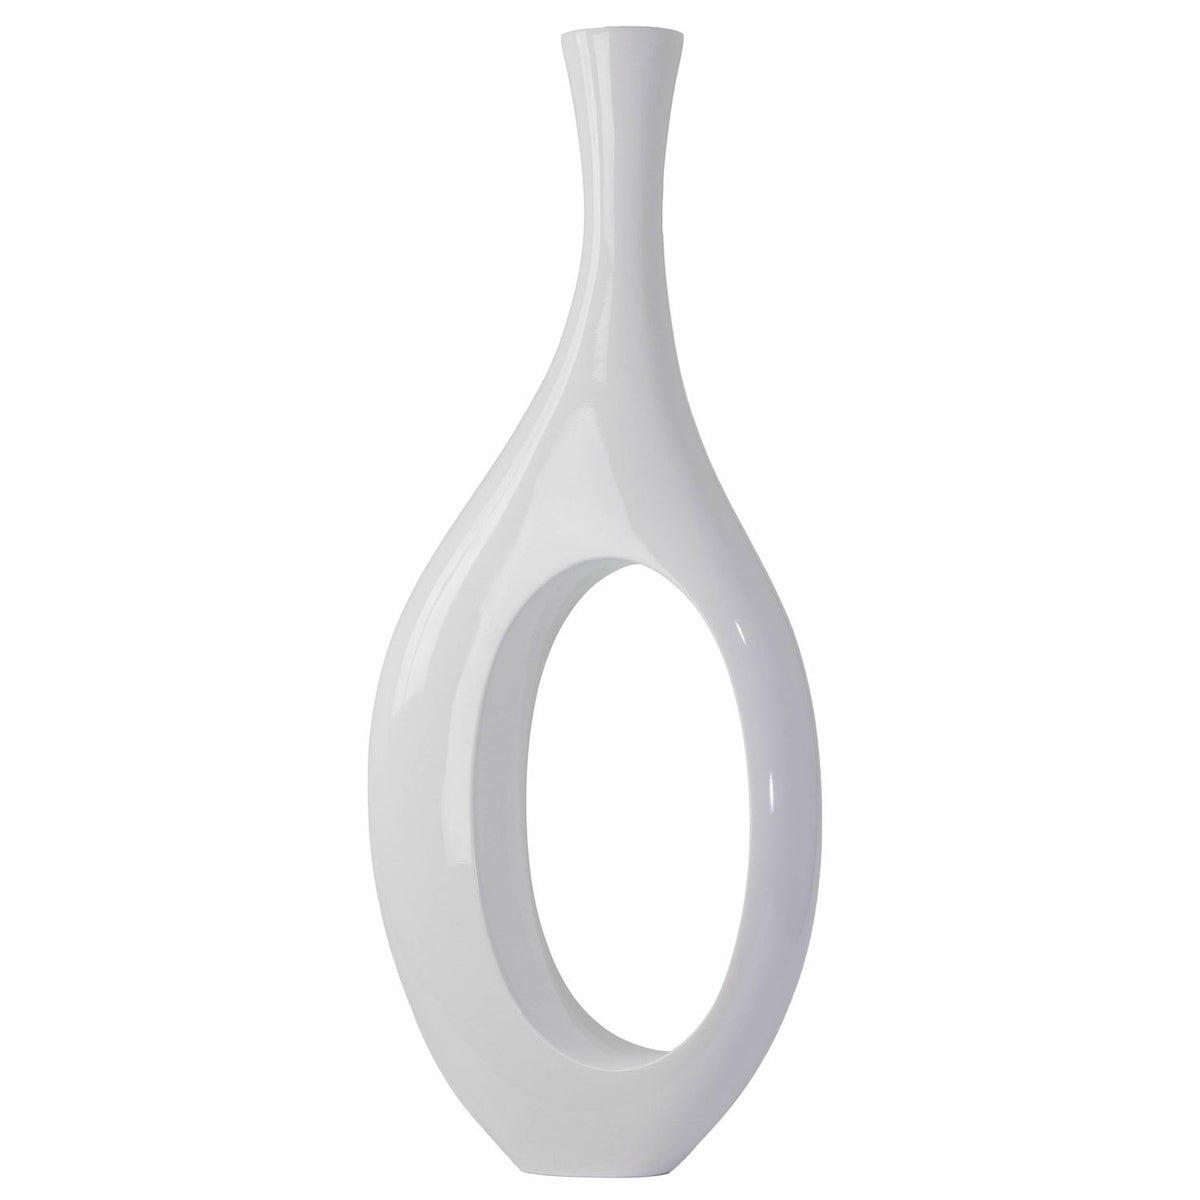 Finesse Decor Trombone Vase in White / Small